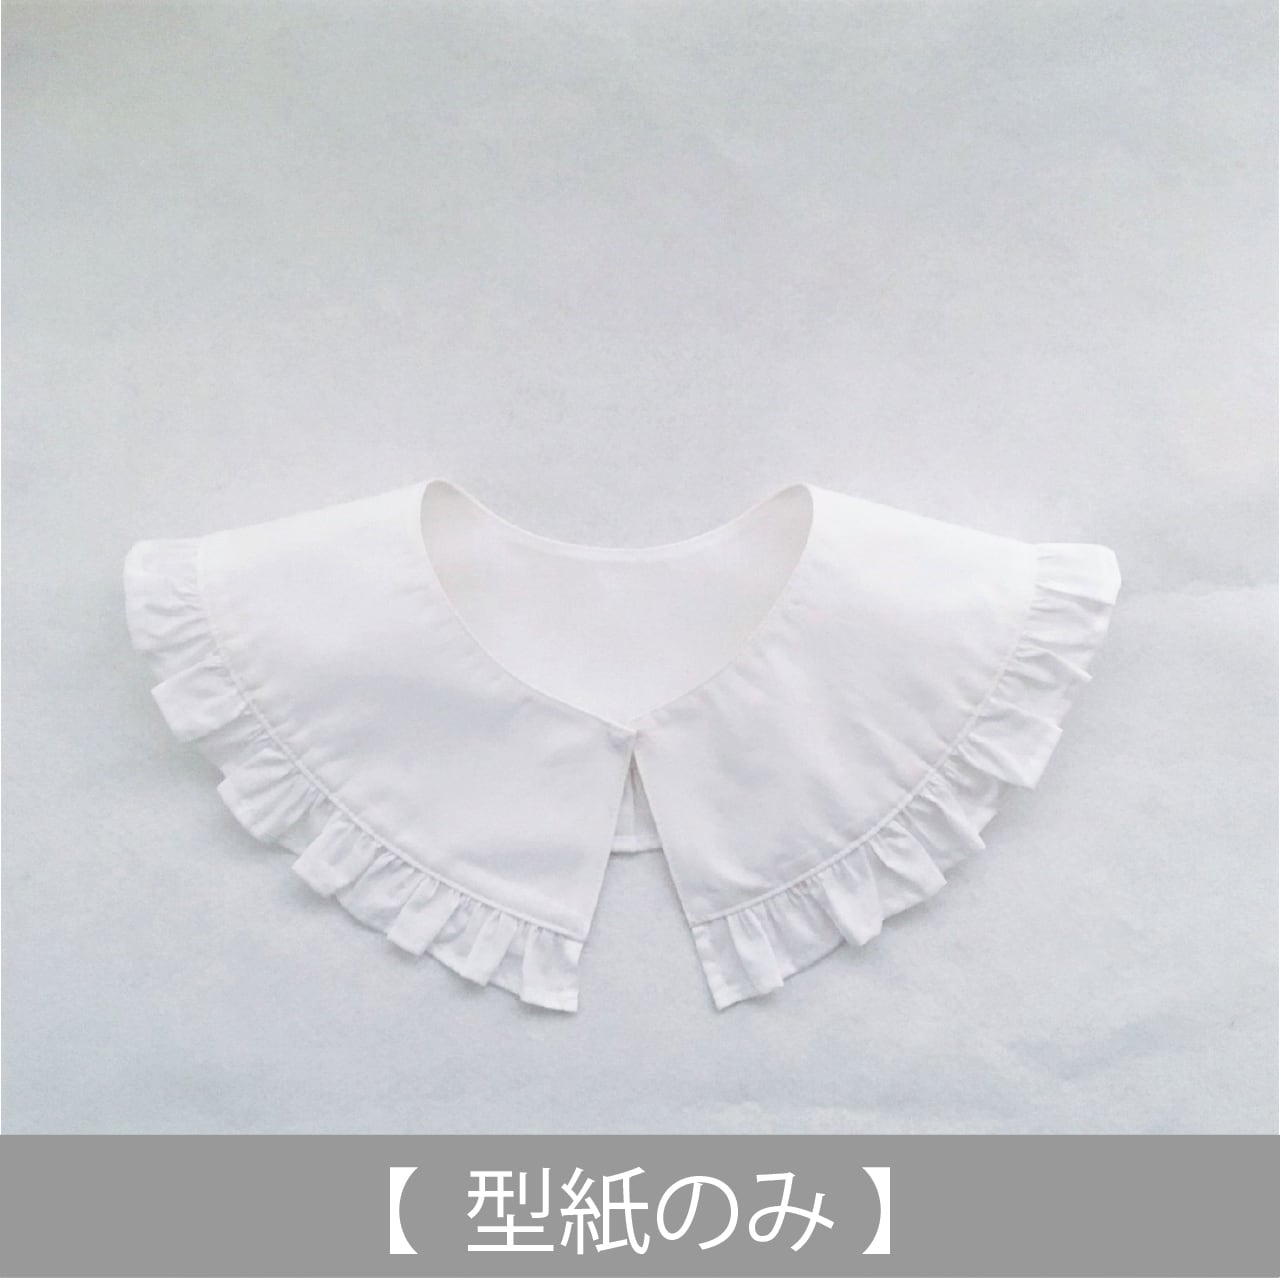 フリル付きの付け衿 型紙のみ Ac 2111 子供服の型紙ショップ Tsukuro ツクロ